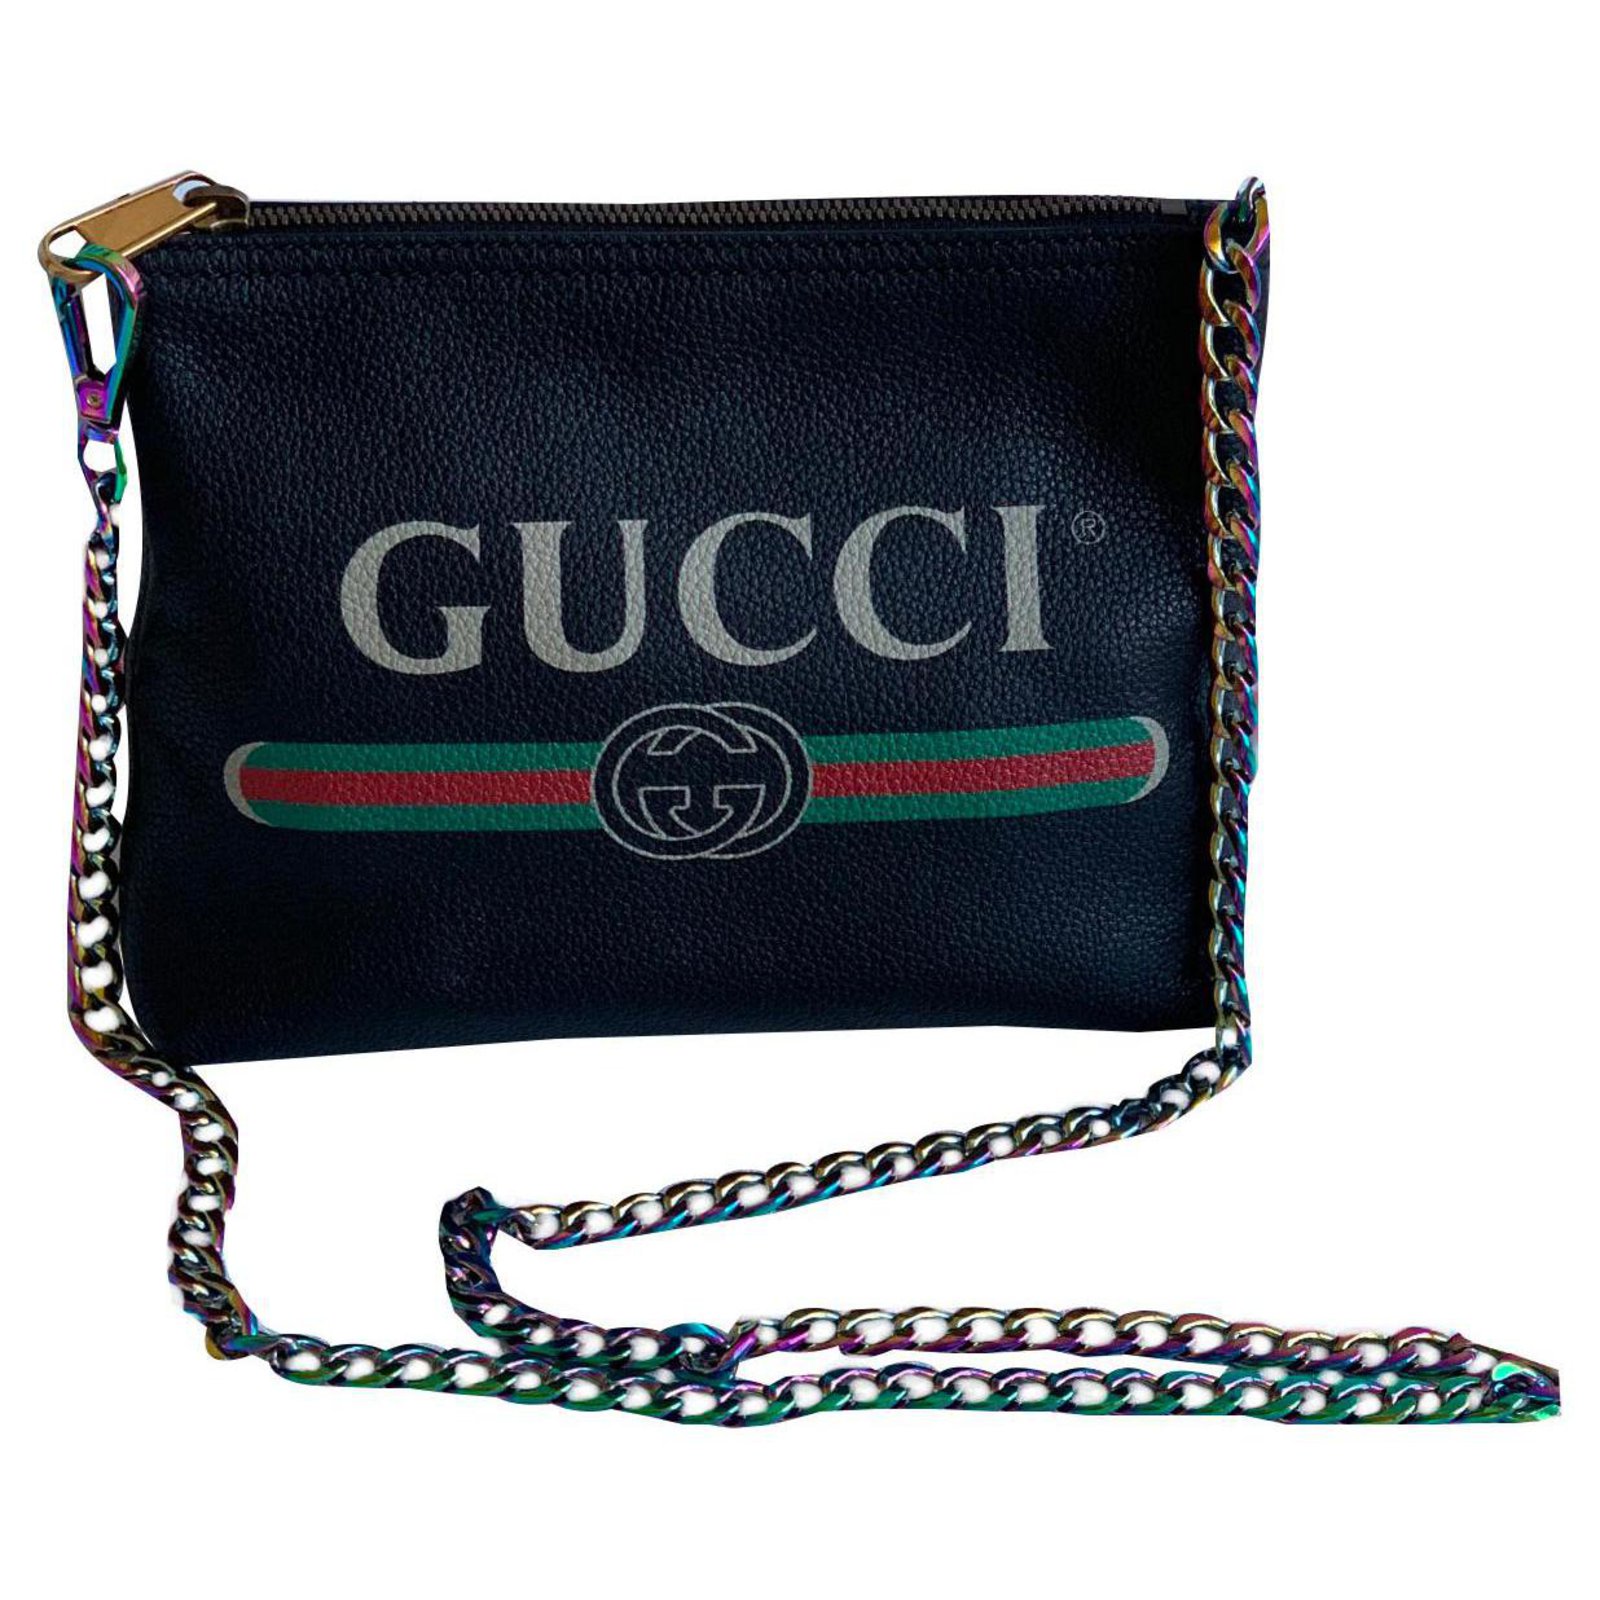 gucci black clutch purse